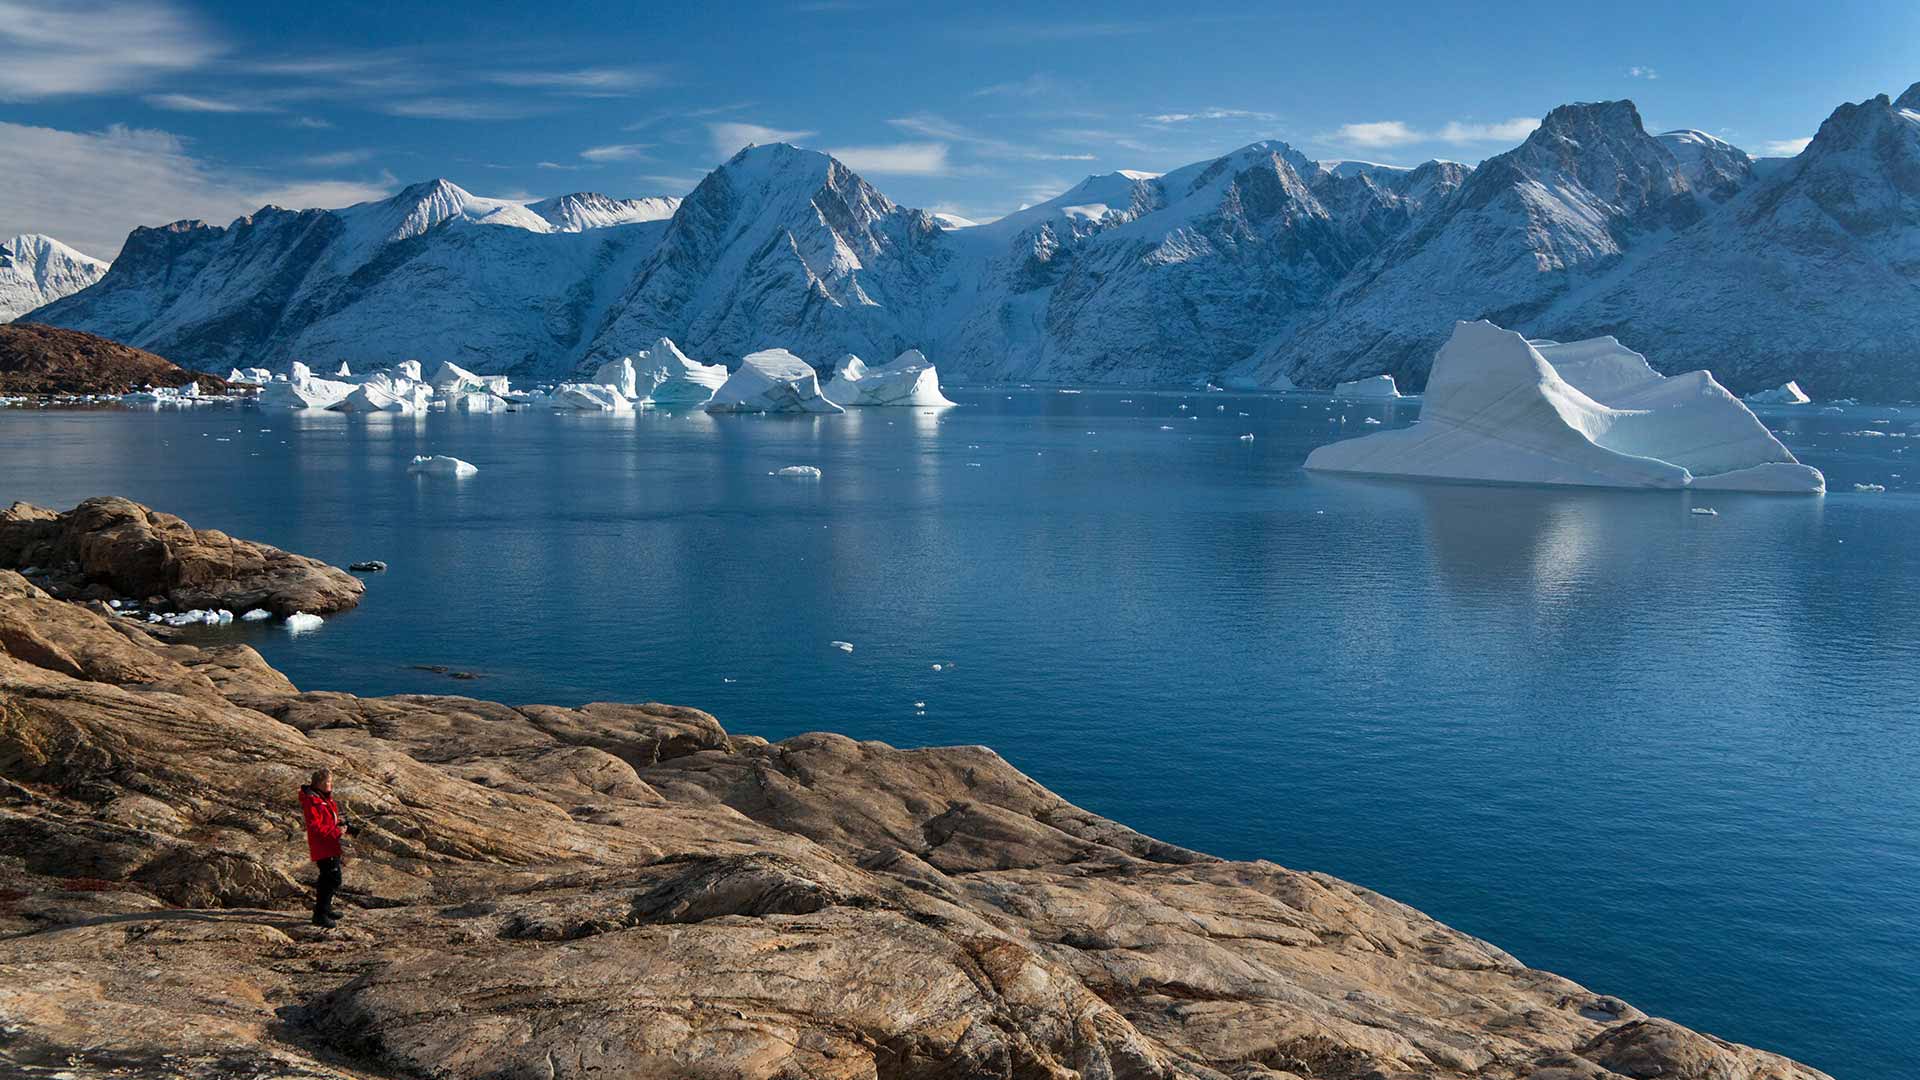 Scoresbysund (Ittoqqortoormiit) - Greenland